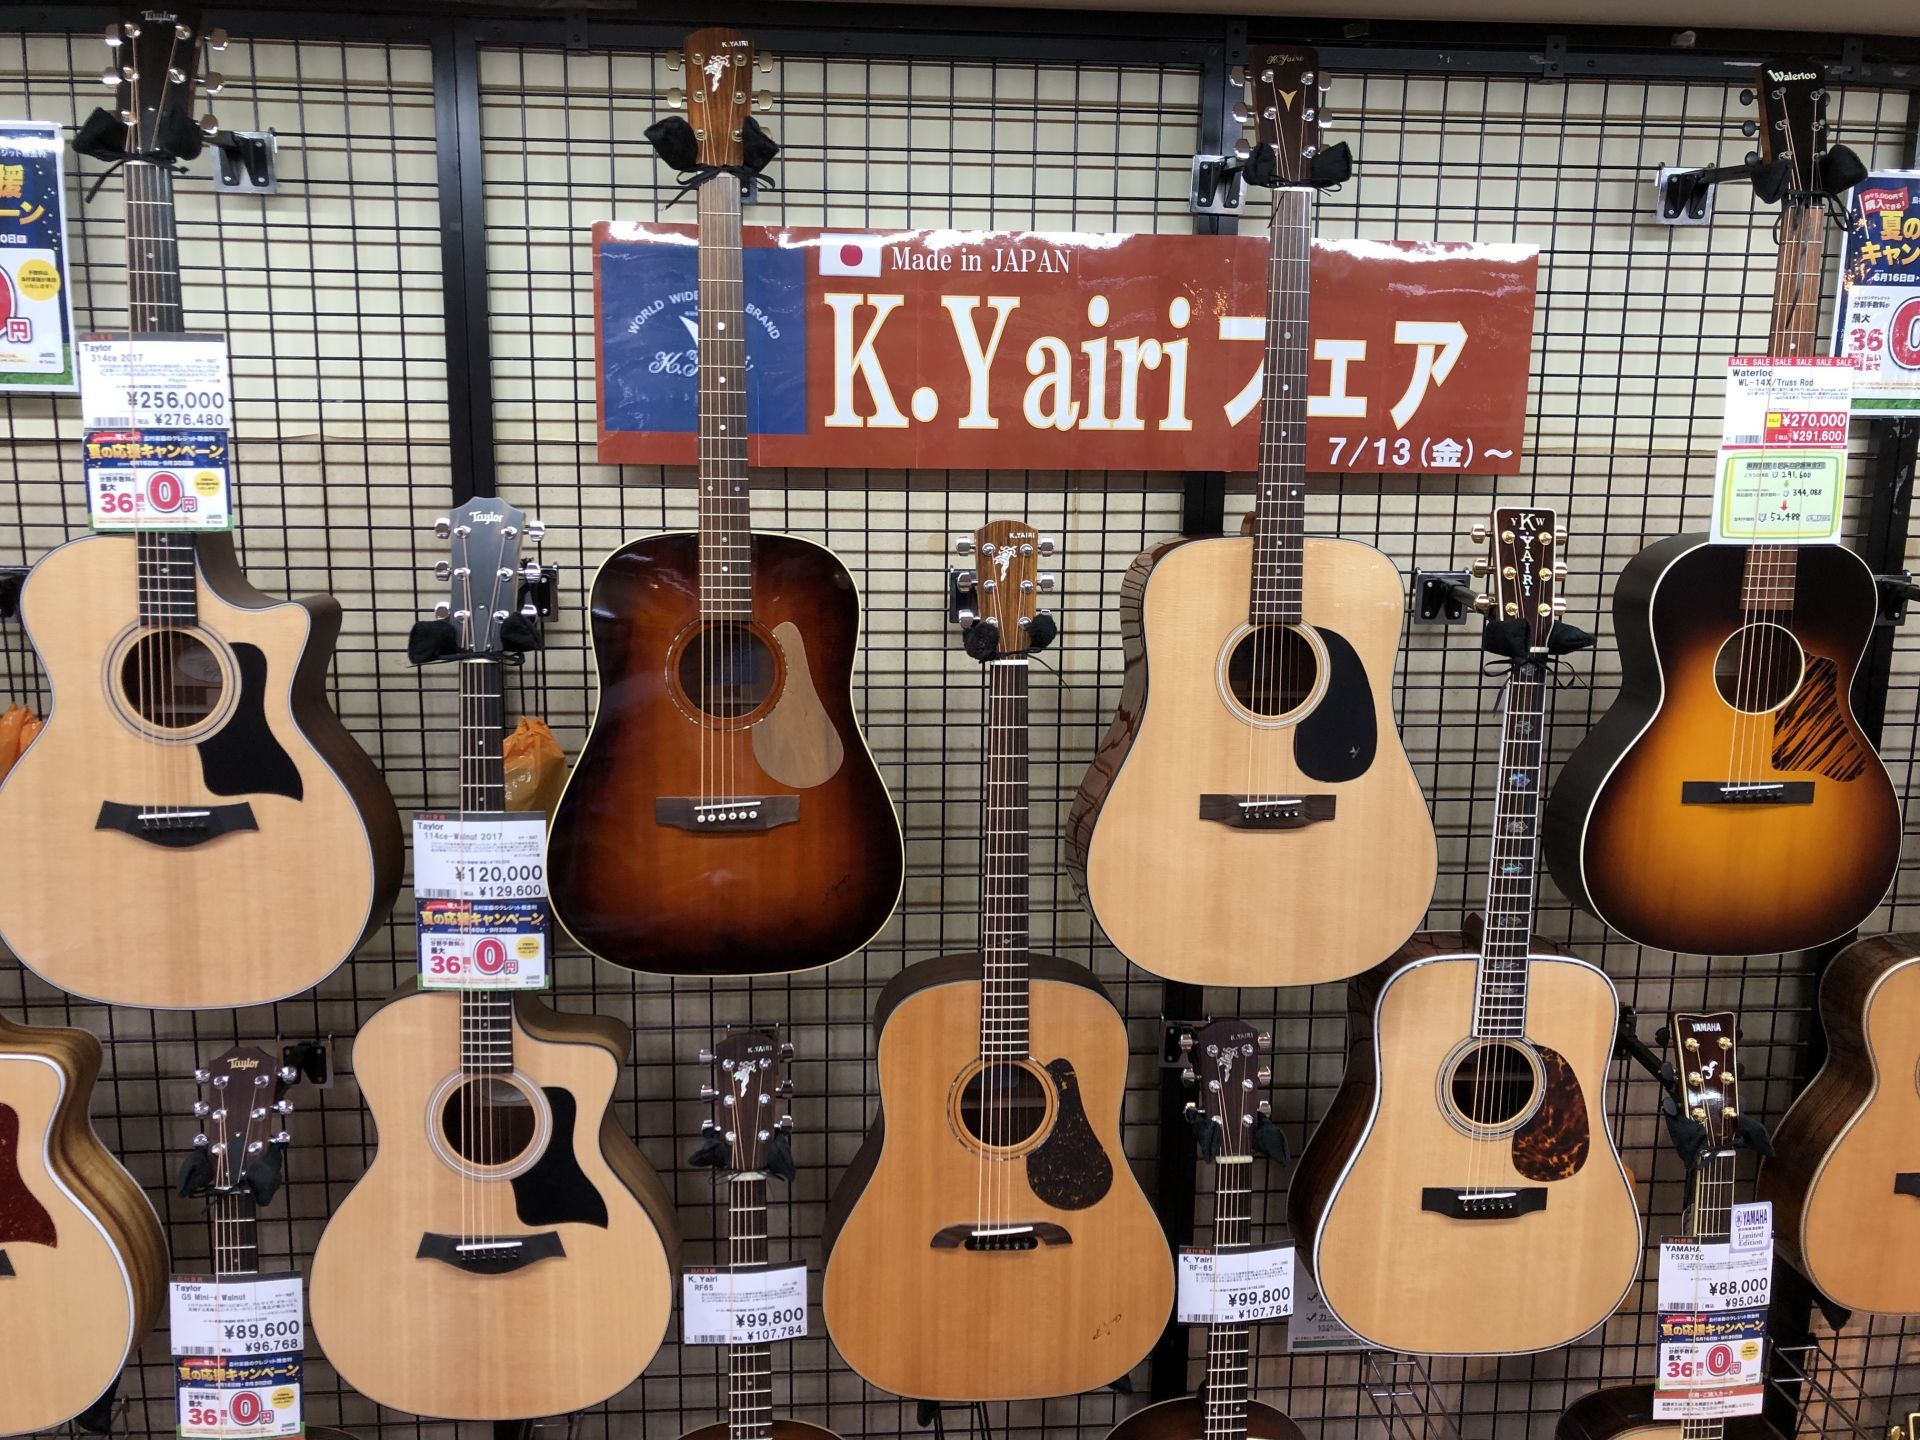 **7月13日より島村楽器イオンモール成田店では【K.yairiフェア】を開催いたします！ **K.yairiとは K.yairiとは、『国産』『ハンドメイド』により約束された、高品質が売りの日本を代表するギターメーカーです！ そんなK.yairiより、一押しのギターを計6本新しく入荷しておりますの […]